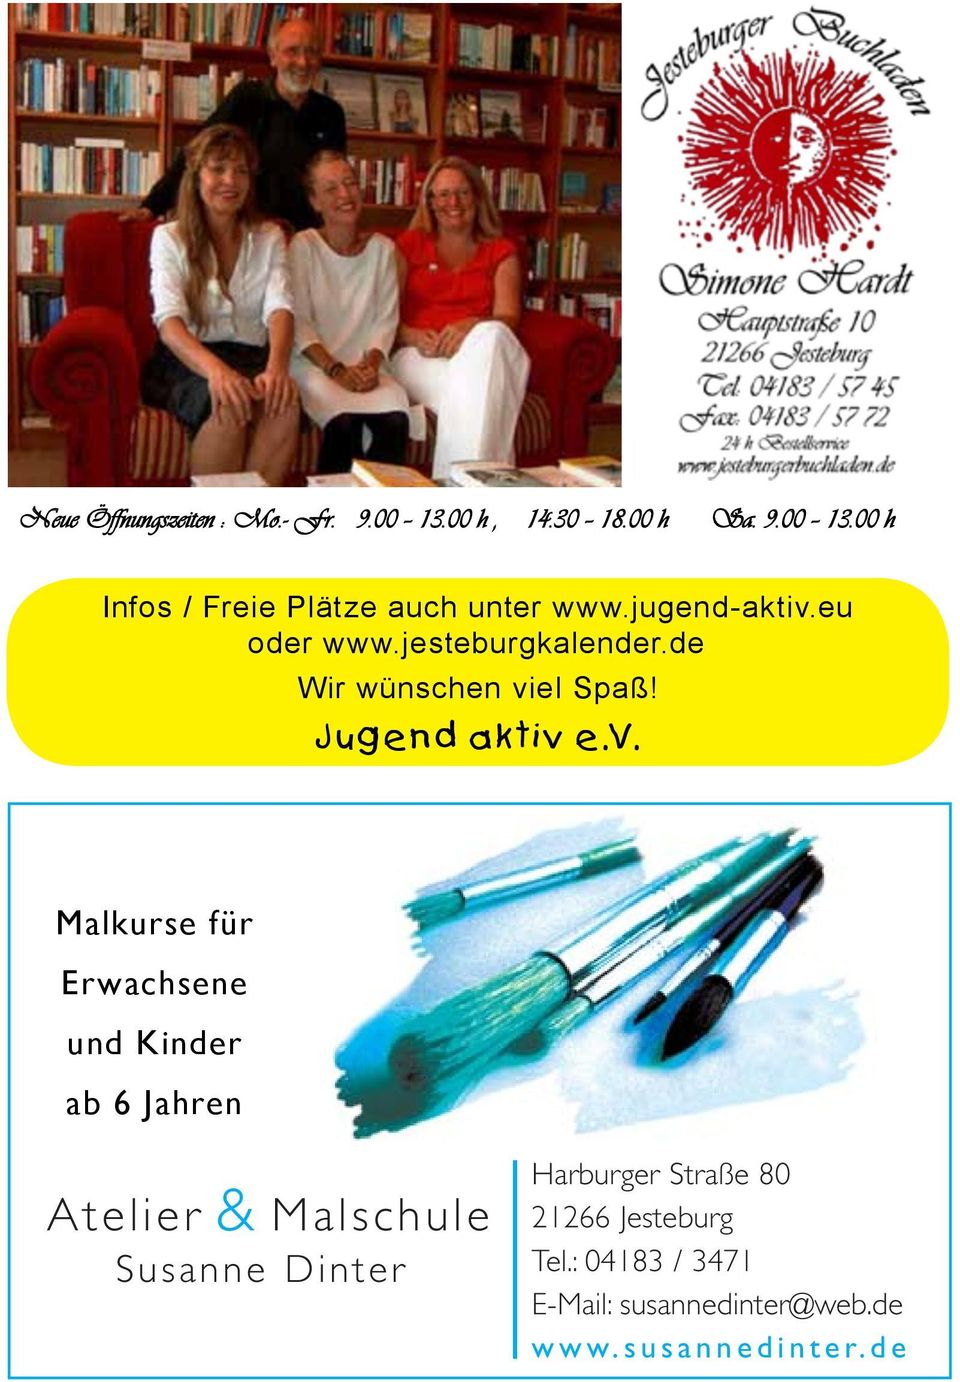 Malkurse für Erwachsene und Kinder ab 6 Jahren Atelier & Malschule Susanne nter Harburger